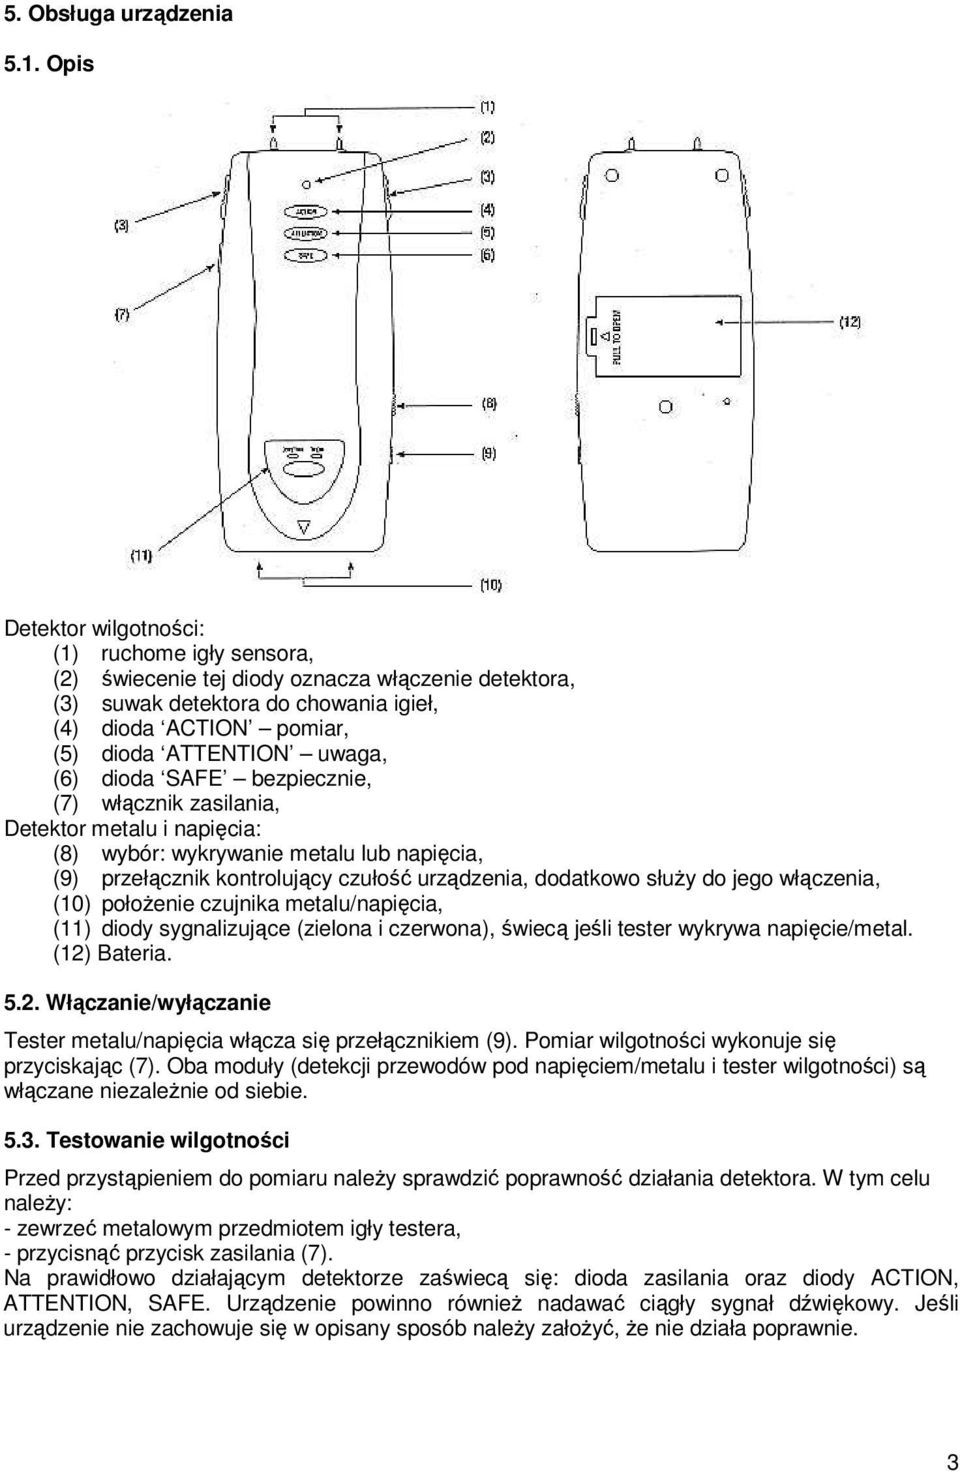 (6) dioda SAFE bezpiecznie, (7) włącznik zasilania, Detektor metalu i napięcia: (8) wybór: wykrywanie metalu lub napięcia, (9) przełącznik kontrolujący czułość urządzenia, dodatkowo słuŝy do jego